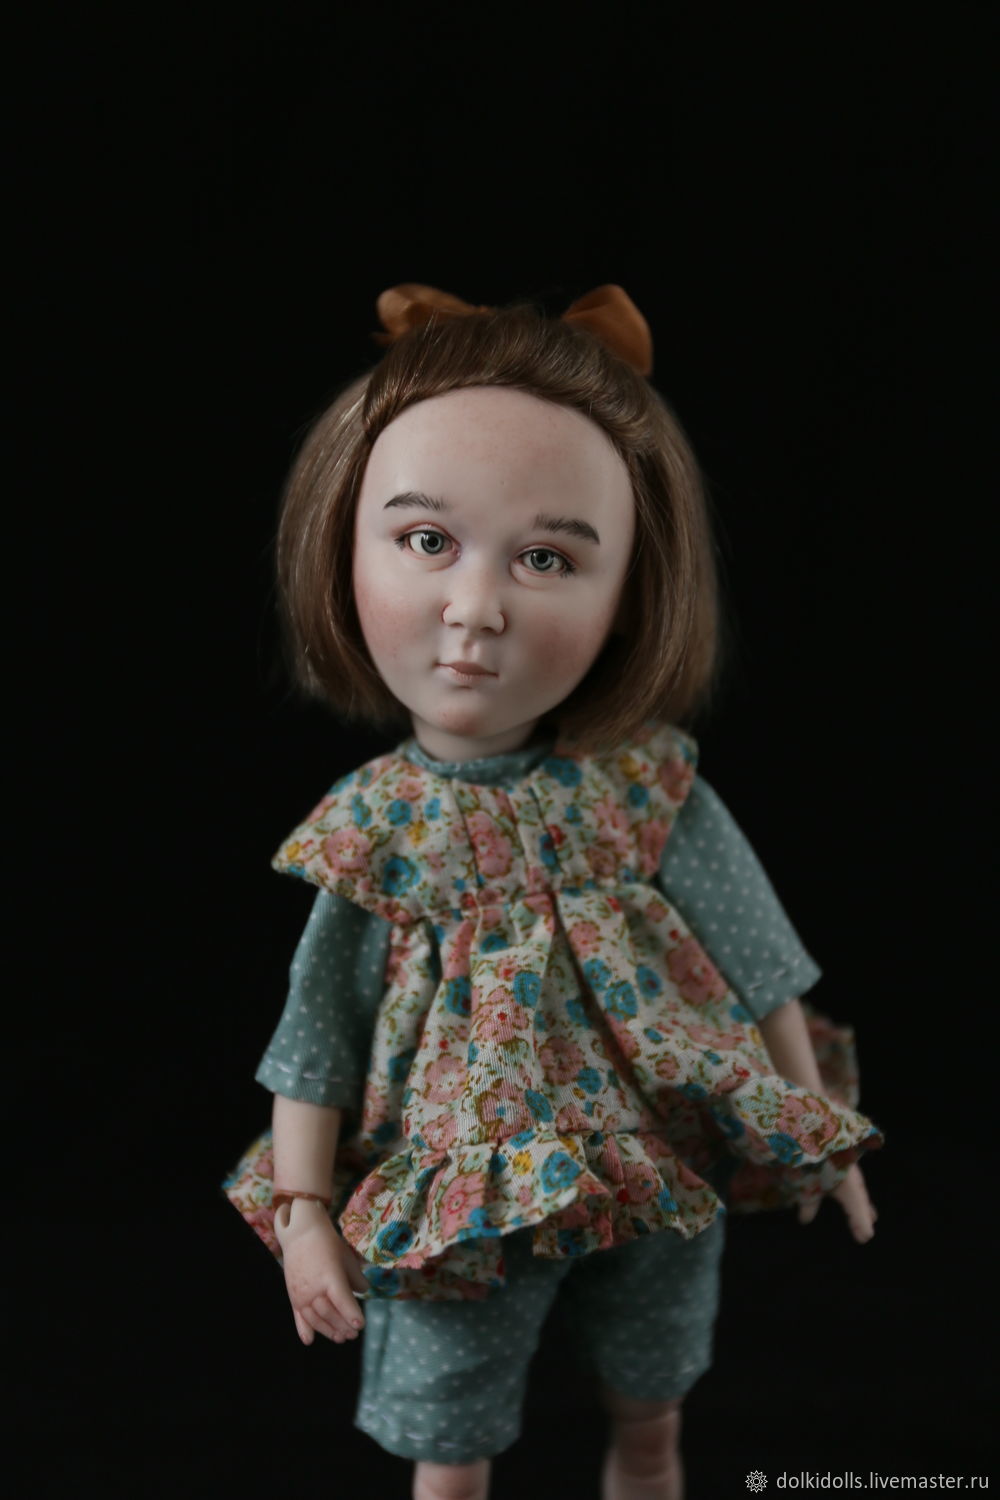  фарфоровая кукла ручной работы, коллекционная кукла, Шарнирная кукла, Дзержинский,  Фото №1